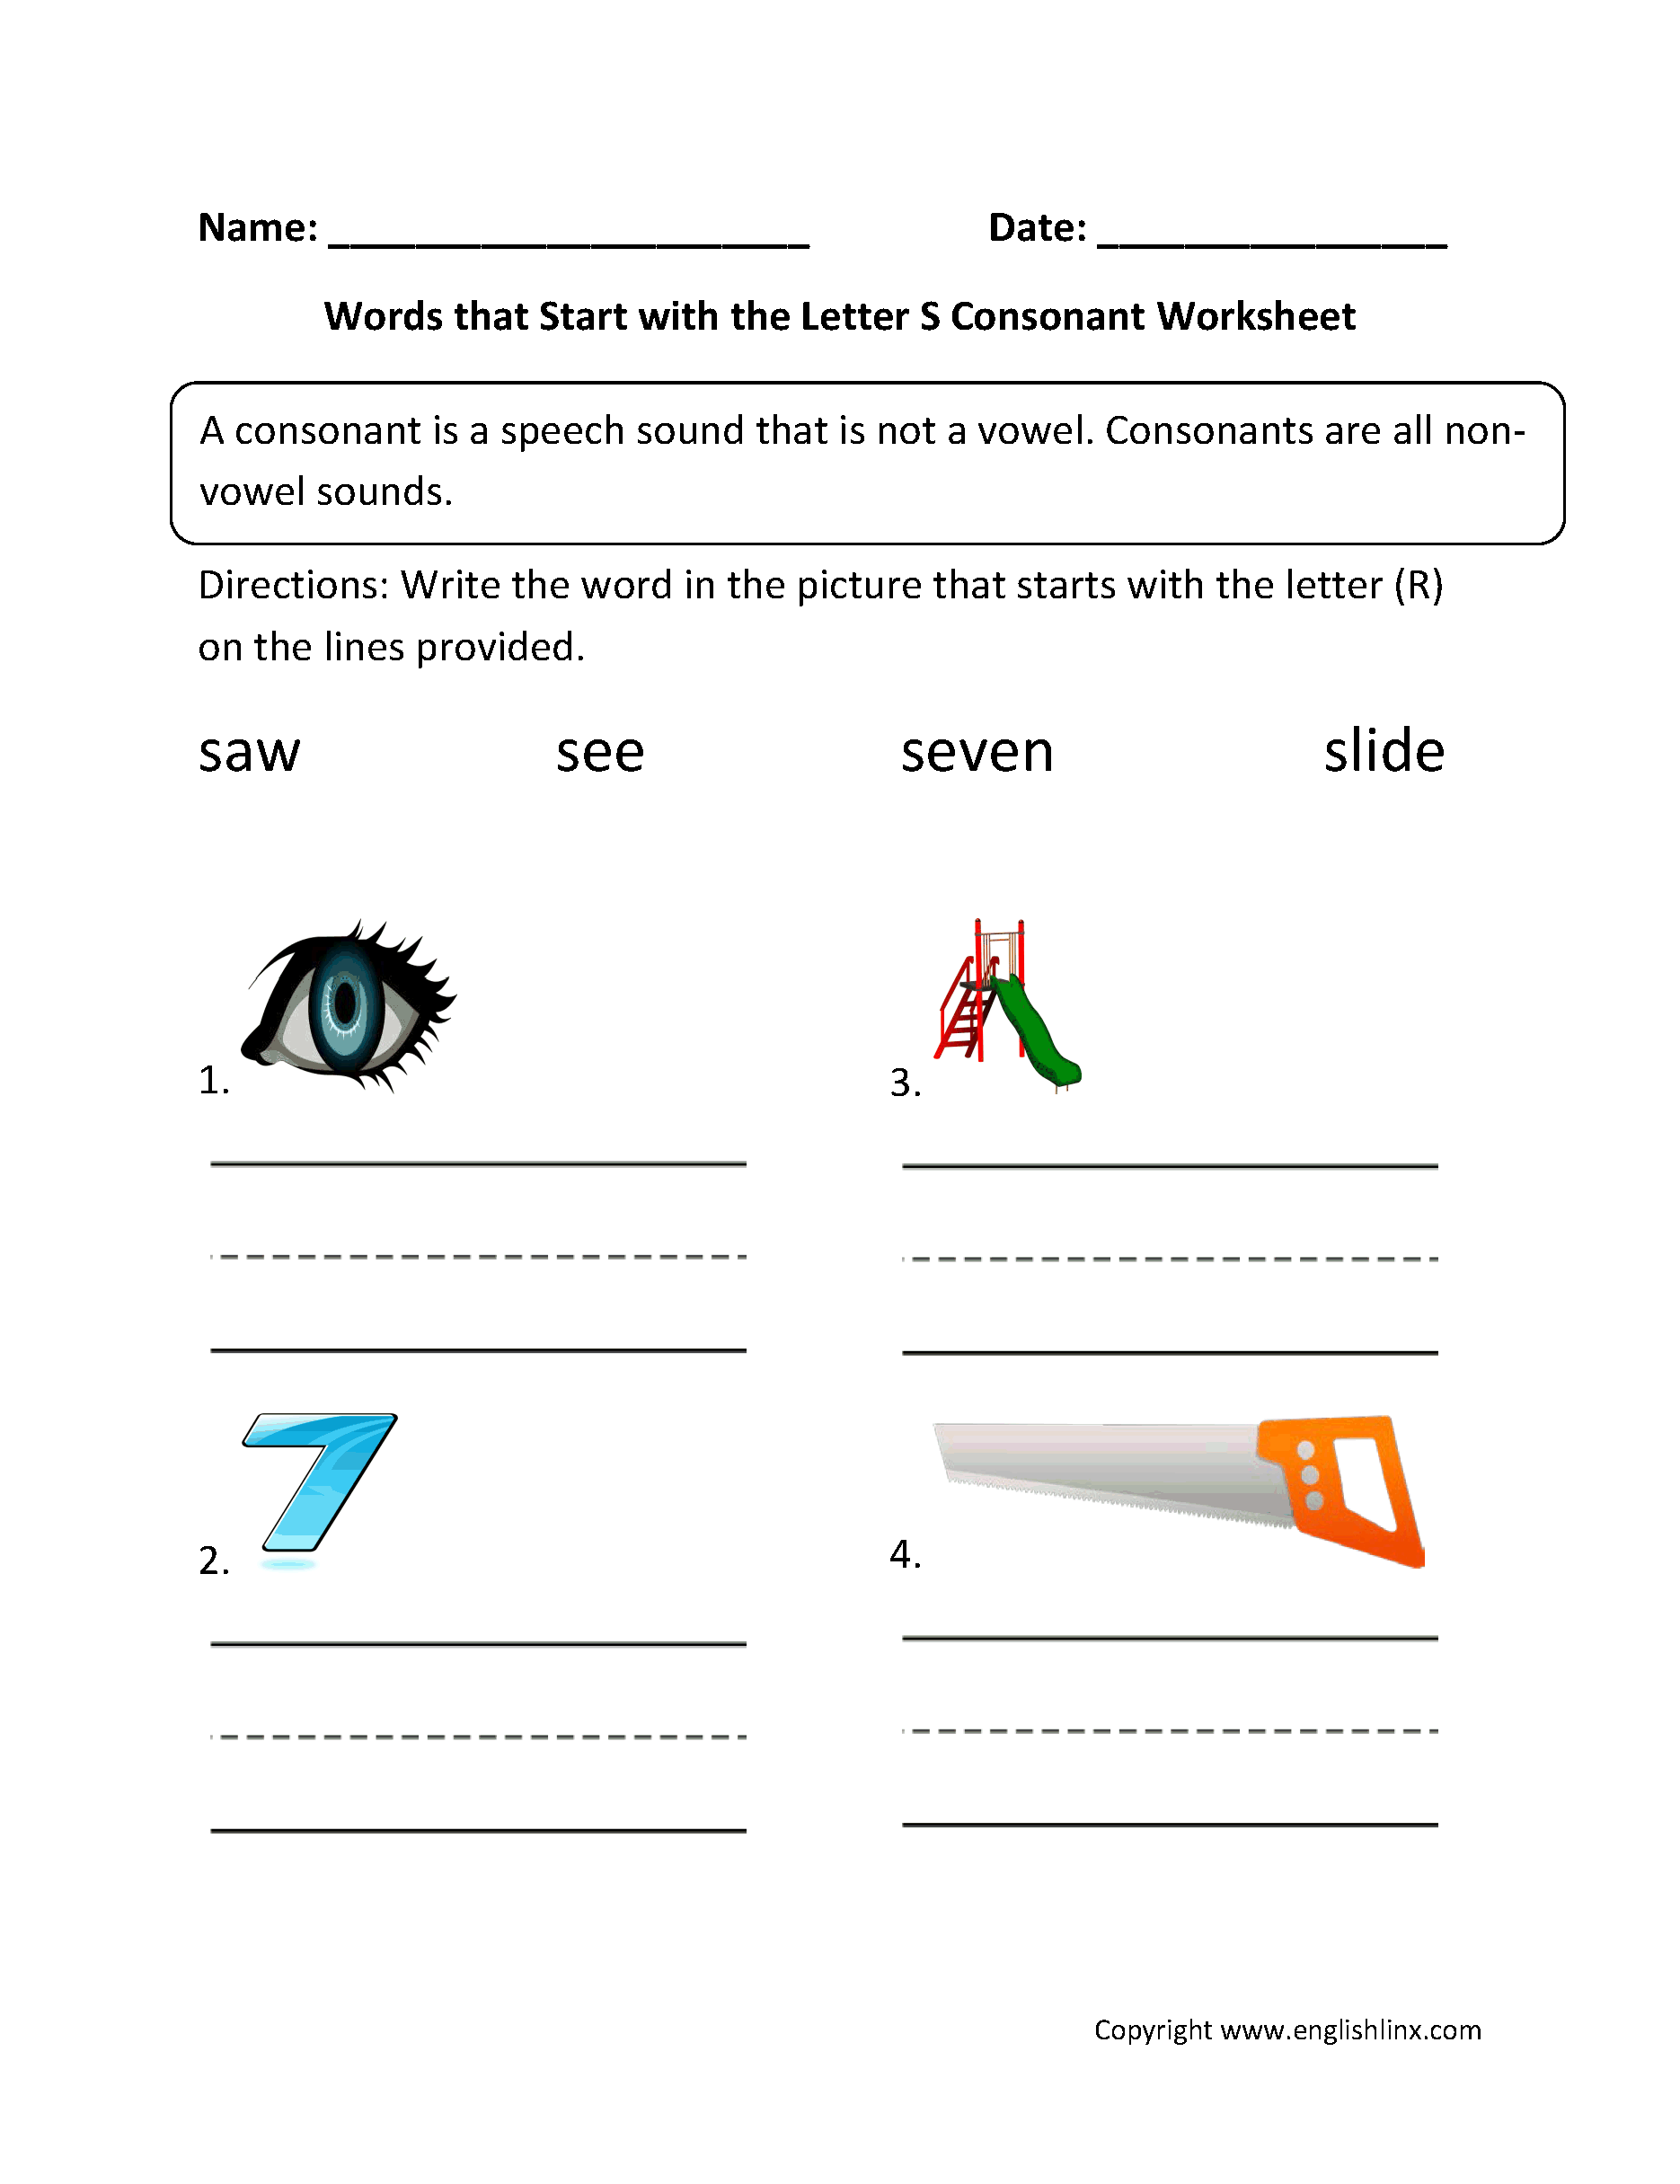 Words Start Letter S Consonant Worksheets